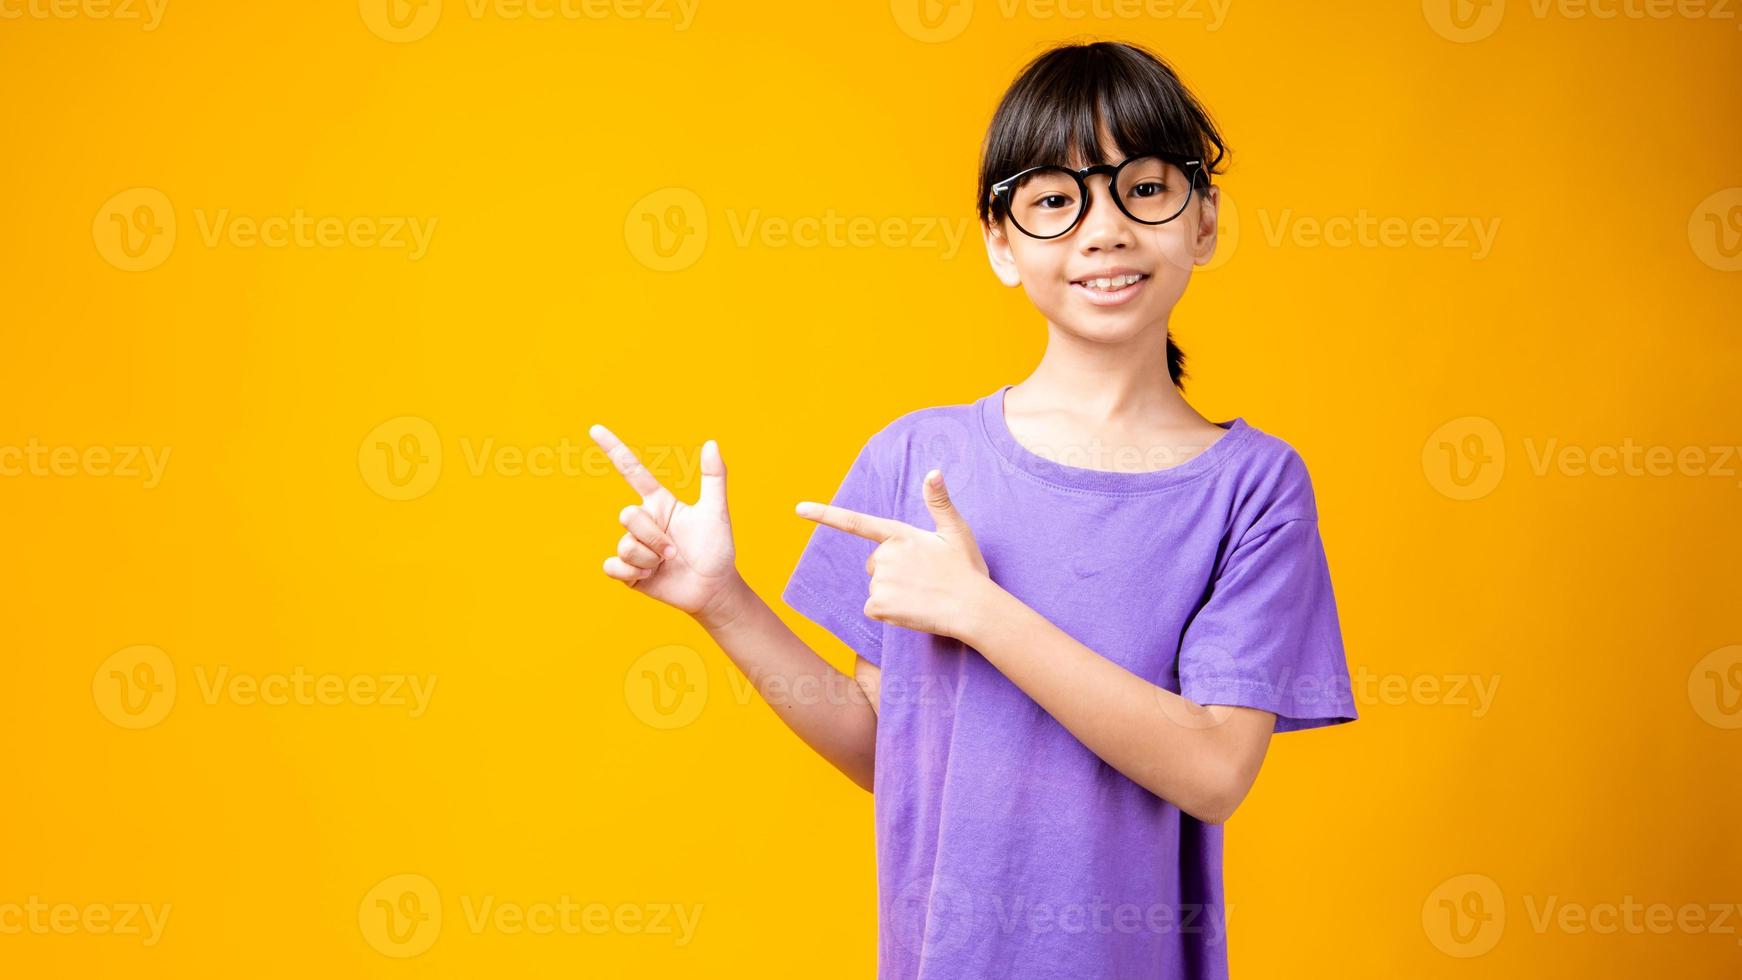 Joven asiática en camisa morada y gafas apuntando al espacio de la copia en el estudio con fondo amarillo foto